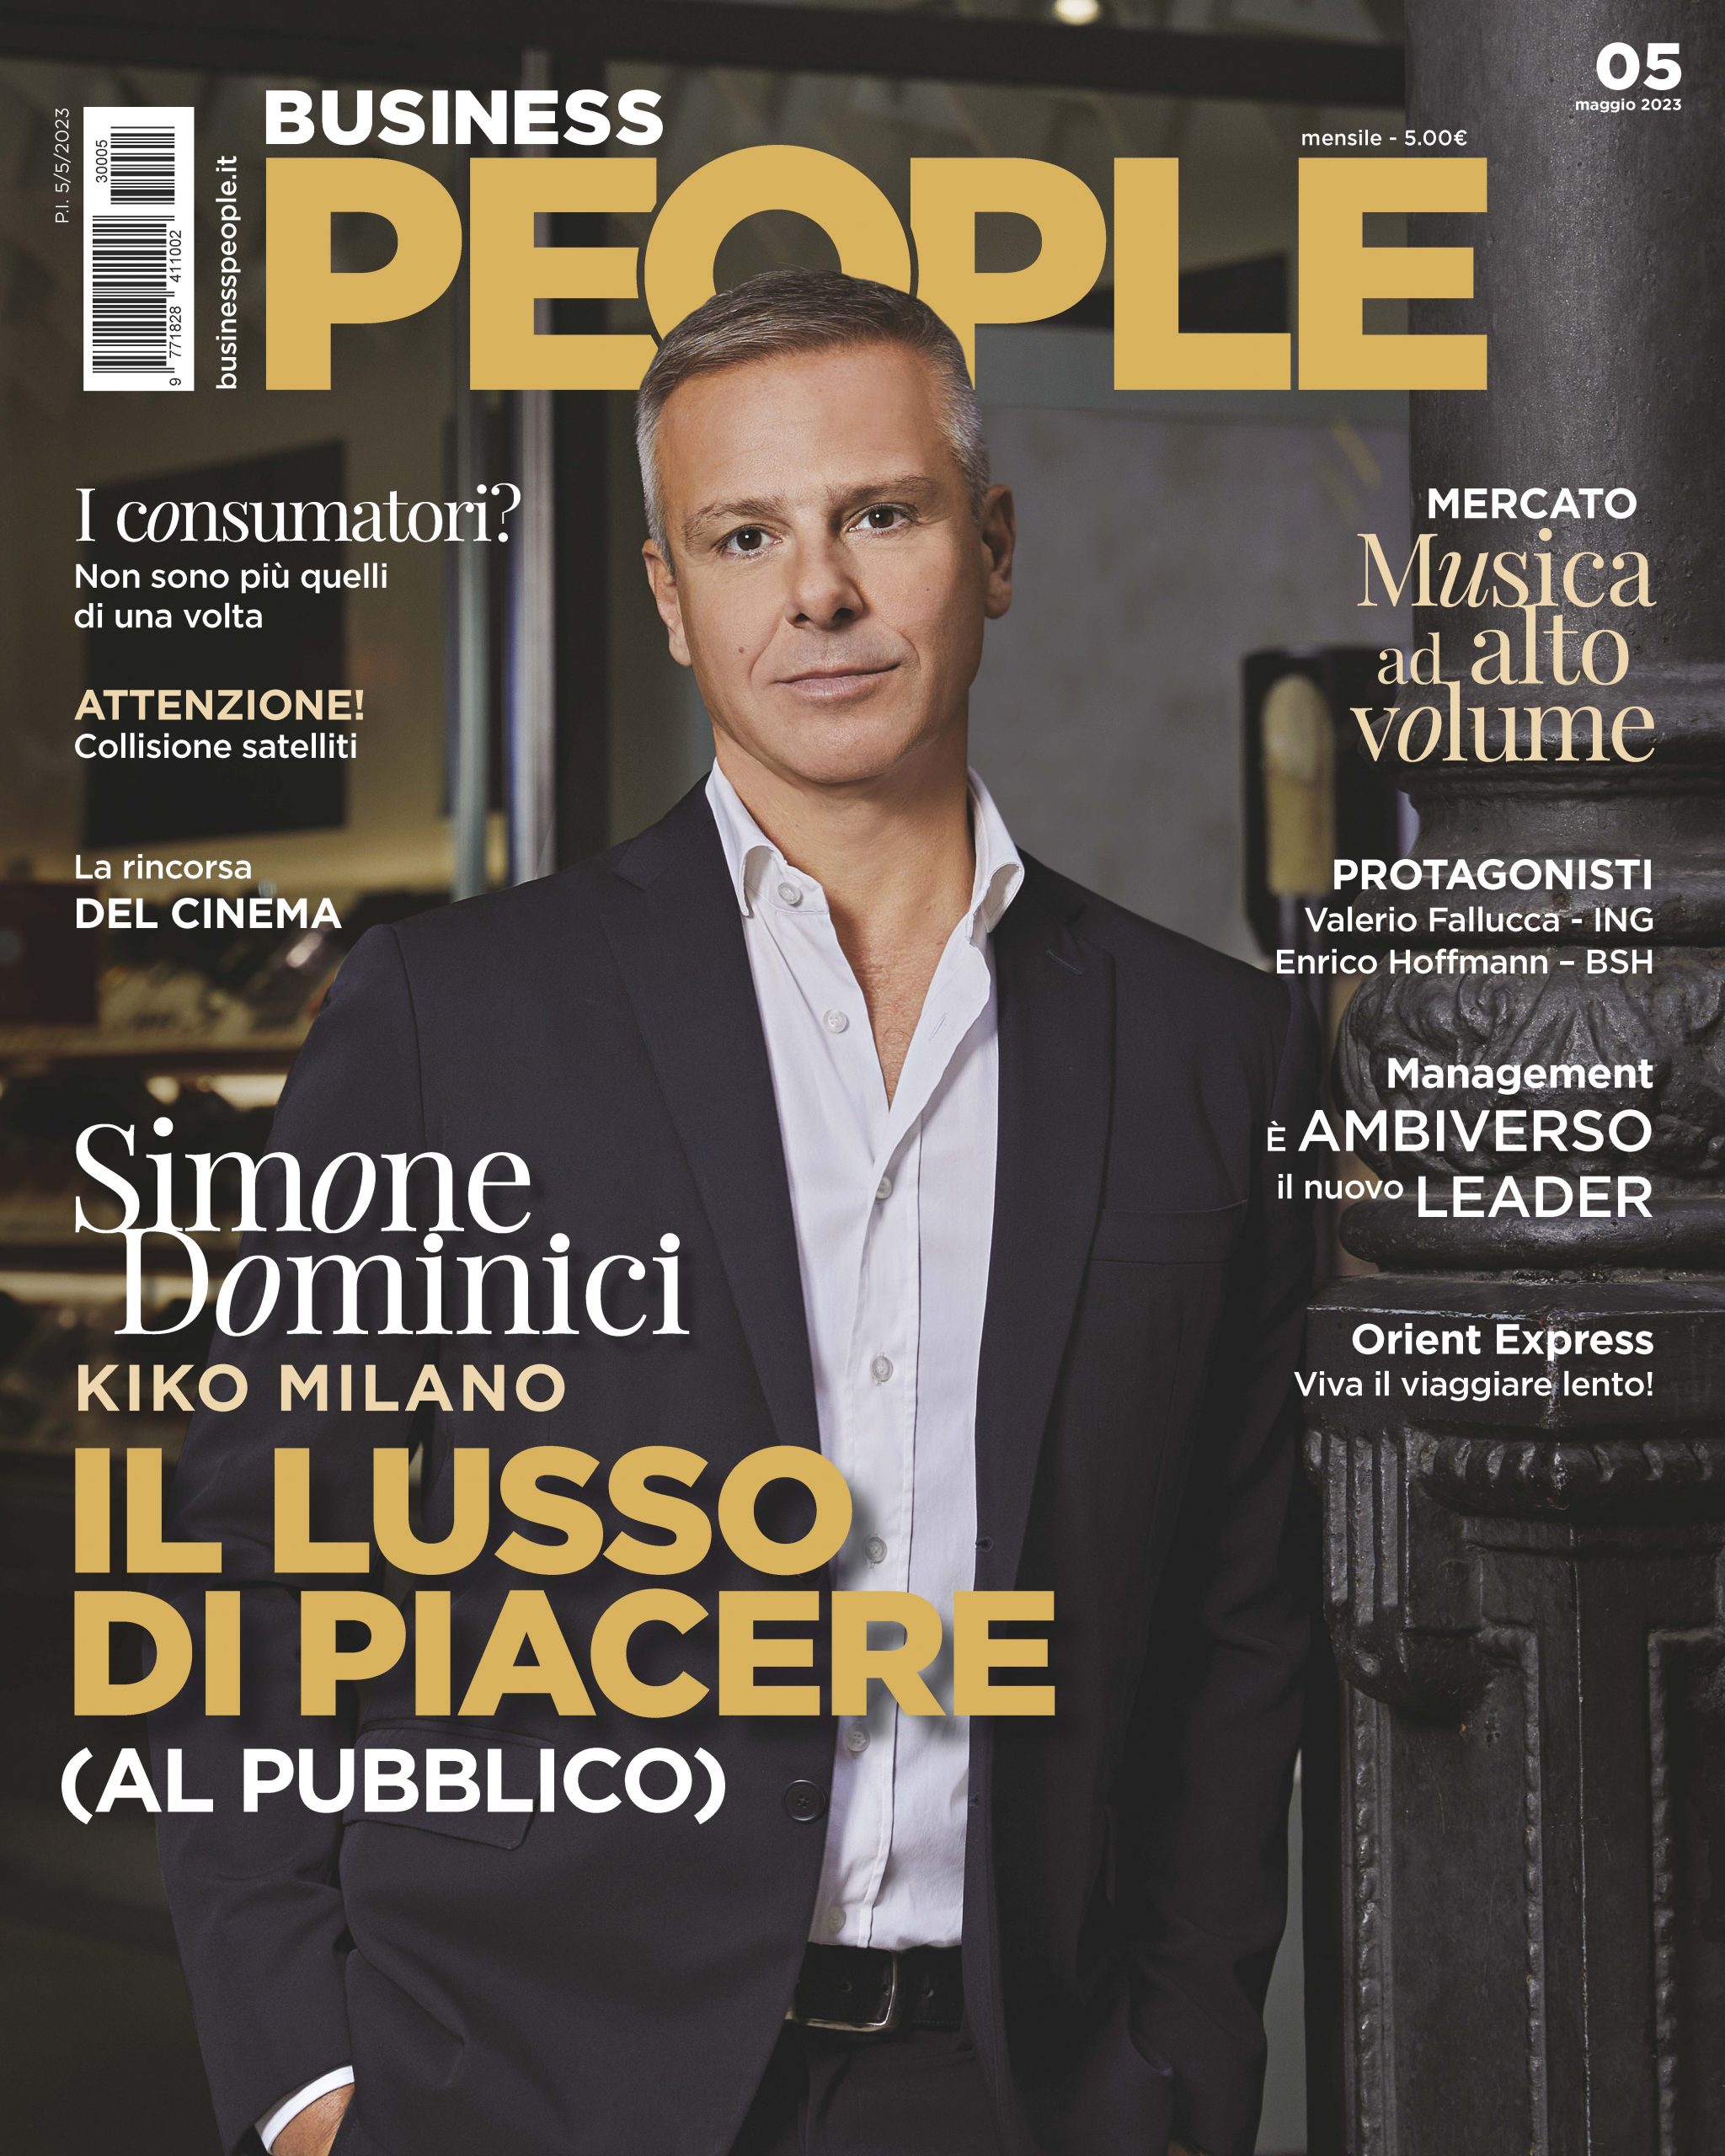 Dominici in copertina su Business People Maggio